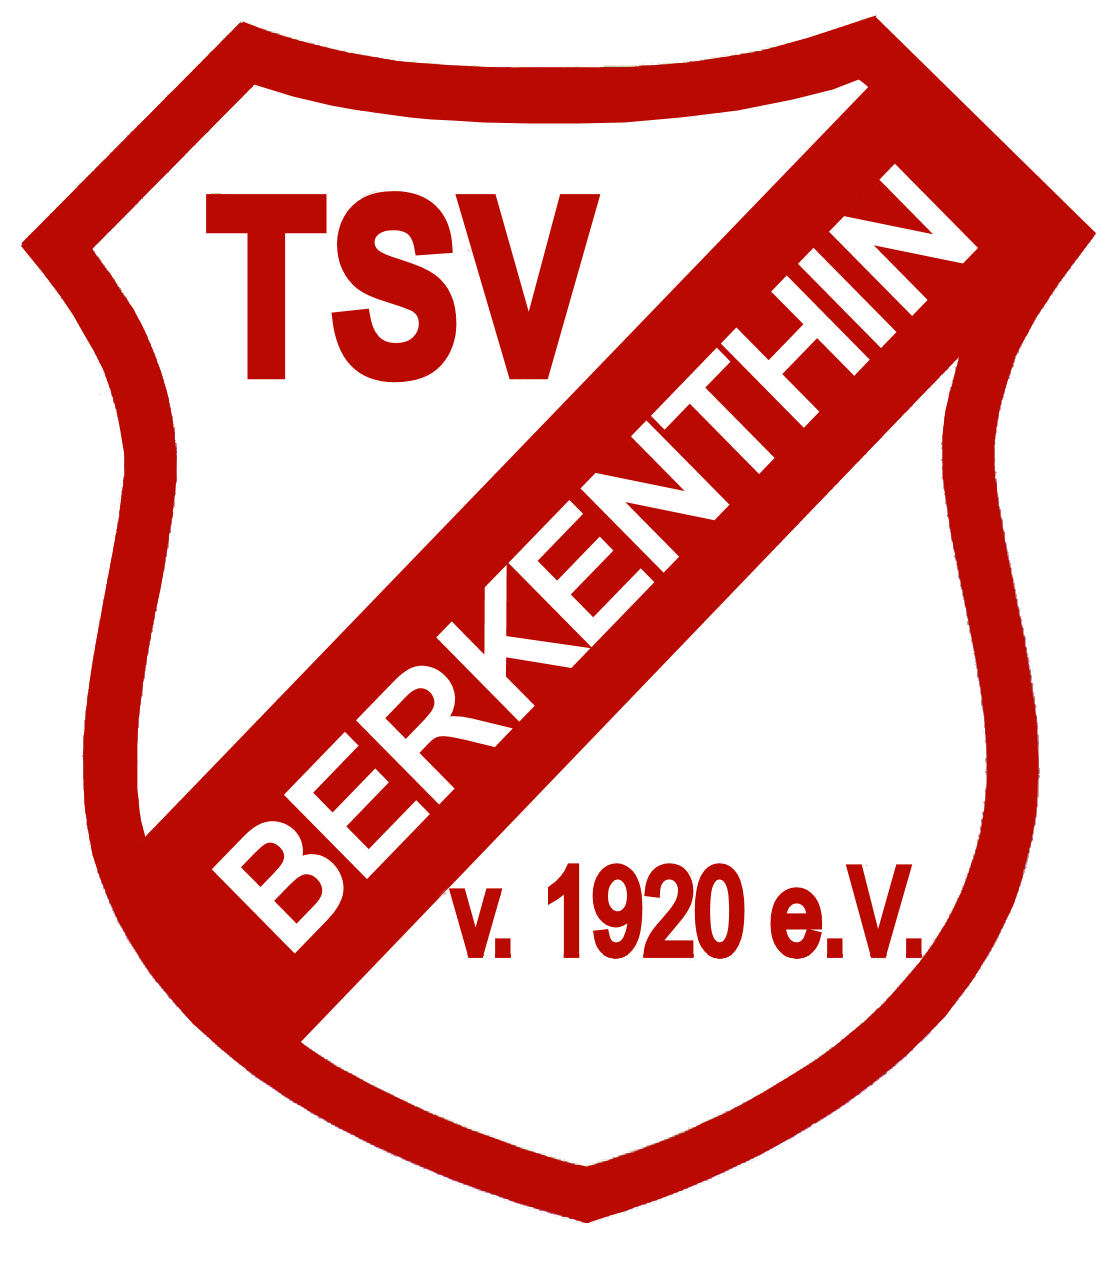 Gemeindevertretung Berkenthin Befasst Sich Am 17.02.2020 Mit Zuschuss An Den TSV Berkenthin